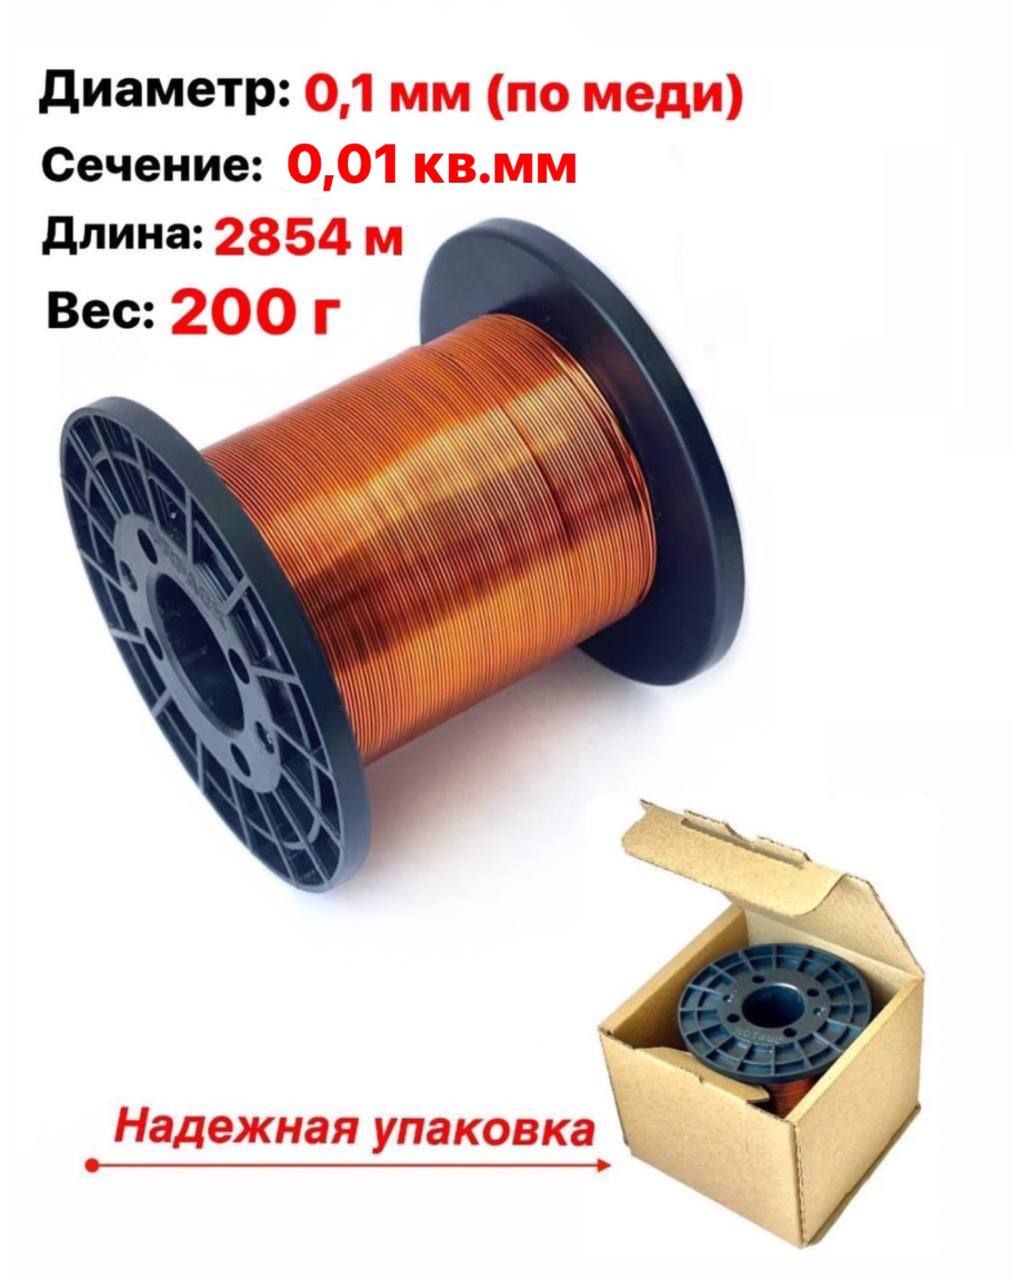 ОбмоточныйэмалированныйпроводПЭТВ-2диаметр0,1мм.200гр.(0,2кг)2854м.катушка1шт.